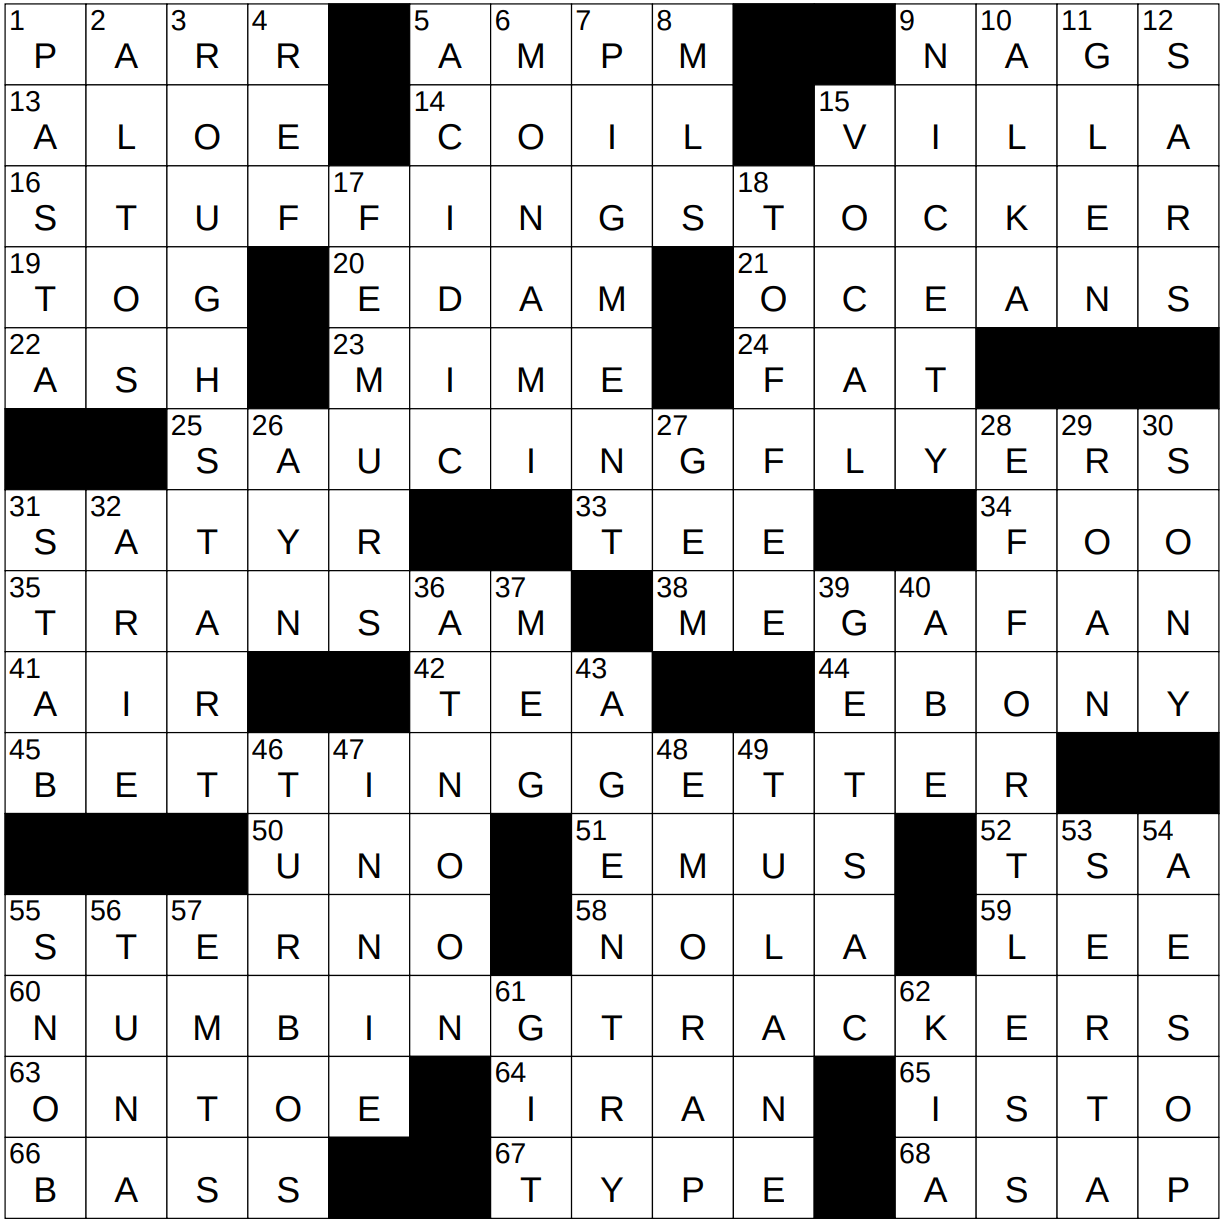 0112 23 NY Times Crossword 12 Jan 23 Thursday